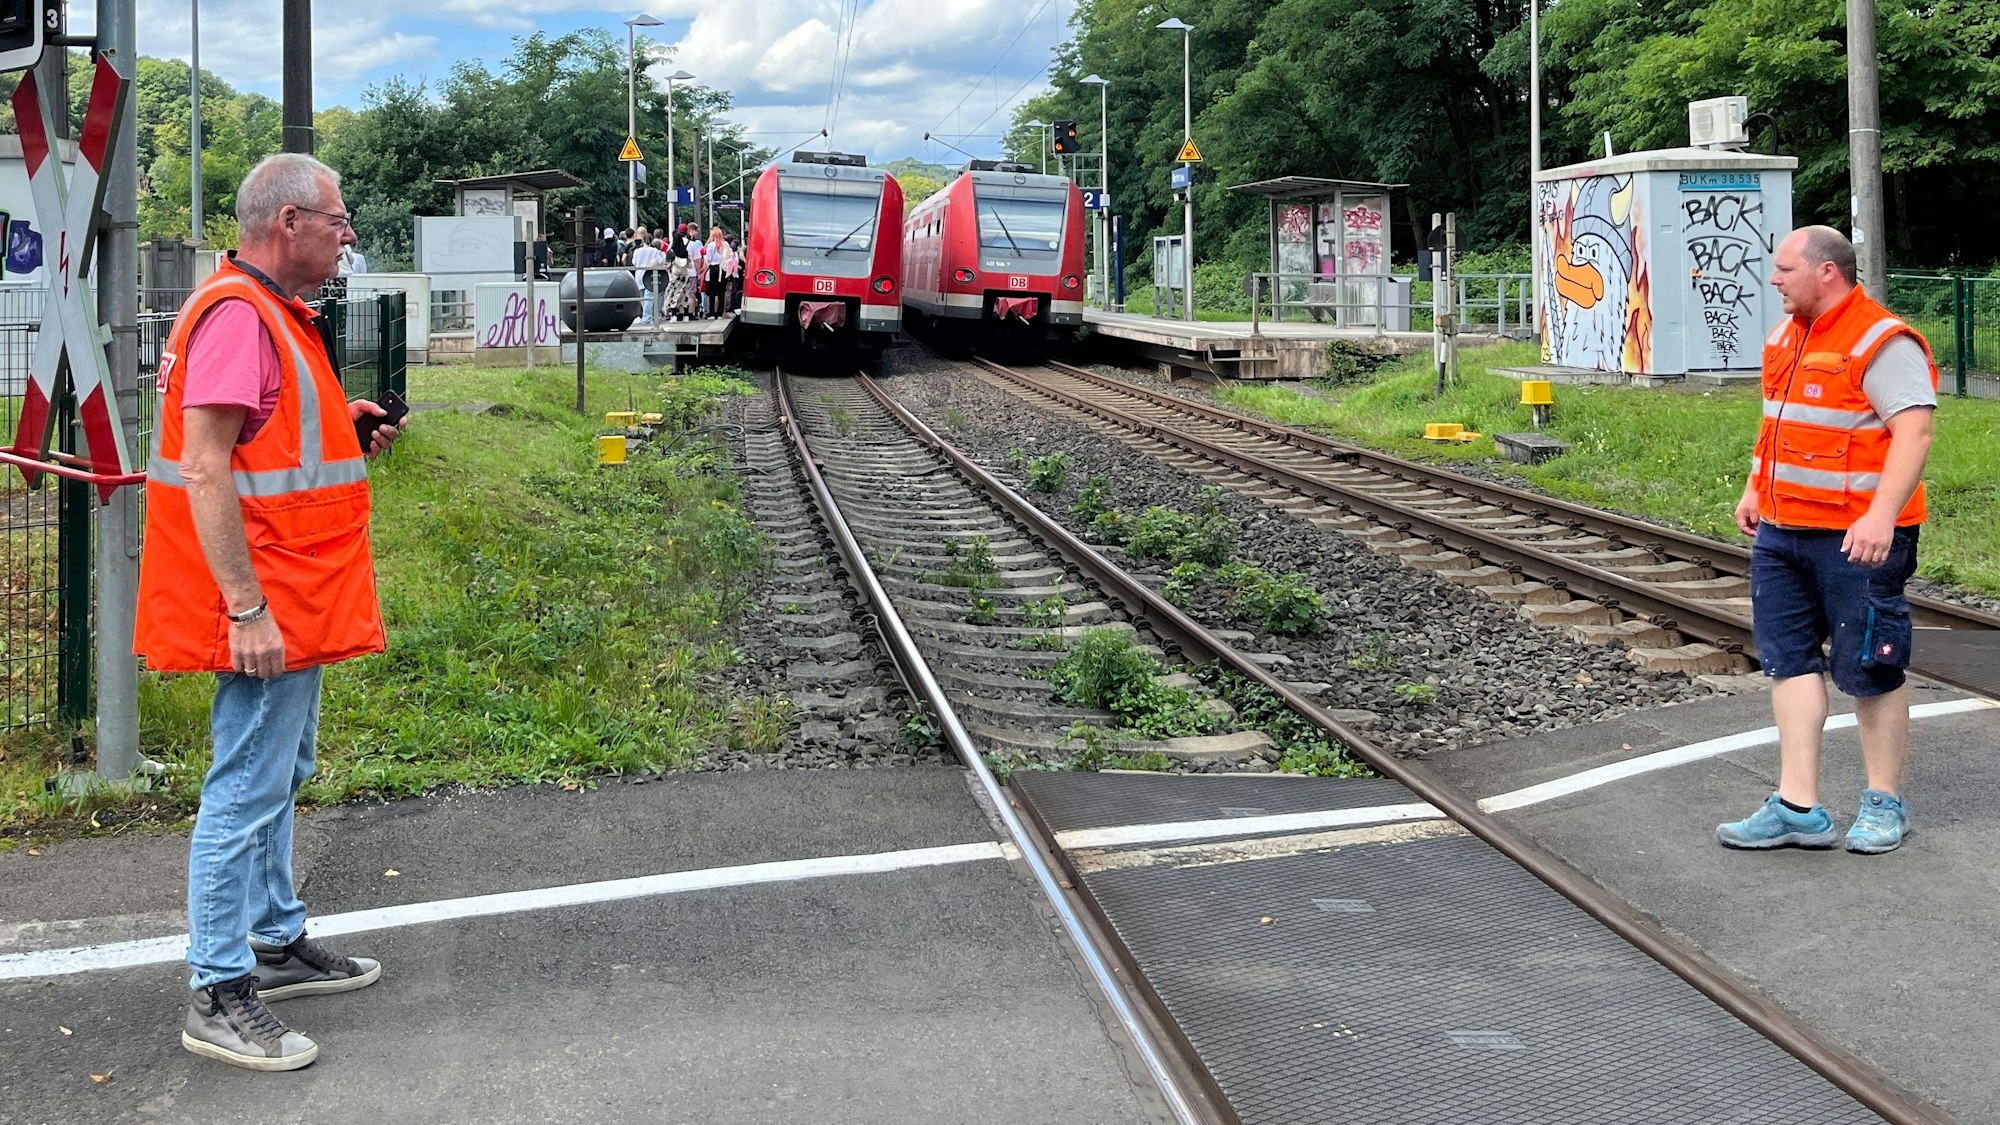 Nach einem Bremsschaden musste ein Zug auf der Siegtalstrecke zunächst auf offener Strecke stehen bleiben, konnte später dann aber in Bahnhof Eitorf-Merten rollen. Dort konnten die Fahrgäste in einen anderen Zug umsteigen. Der Notfallmanager (l.) ließ die Strecke sperren.